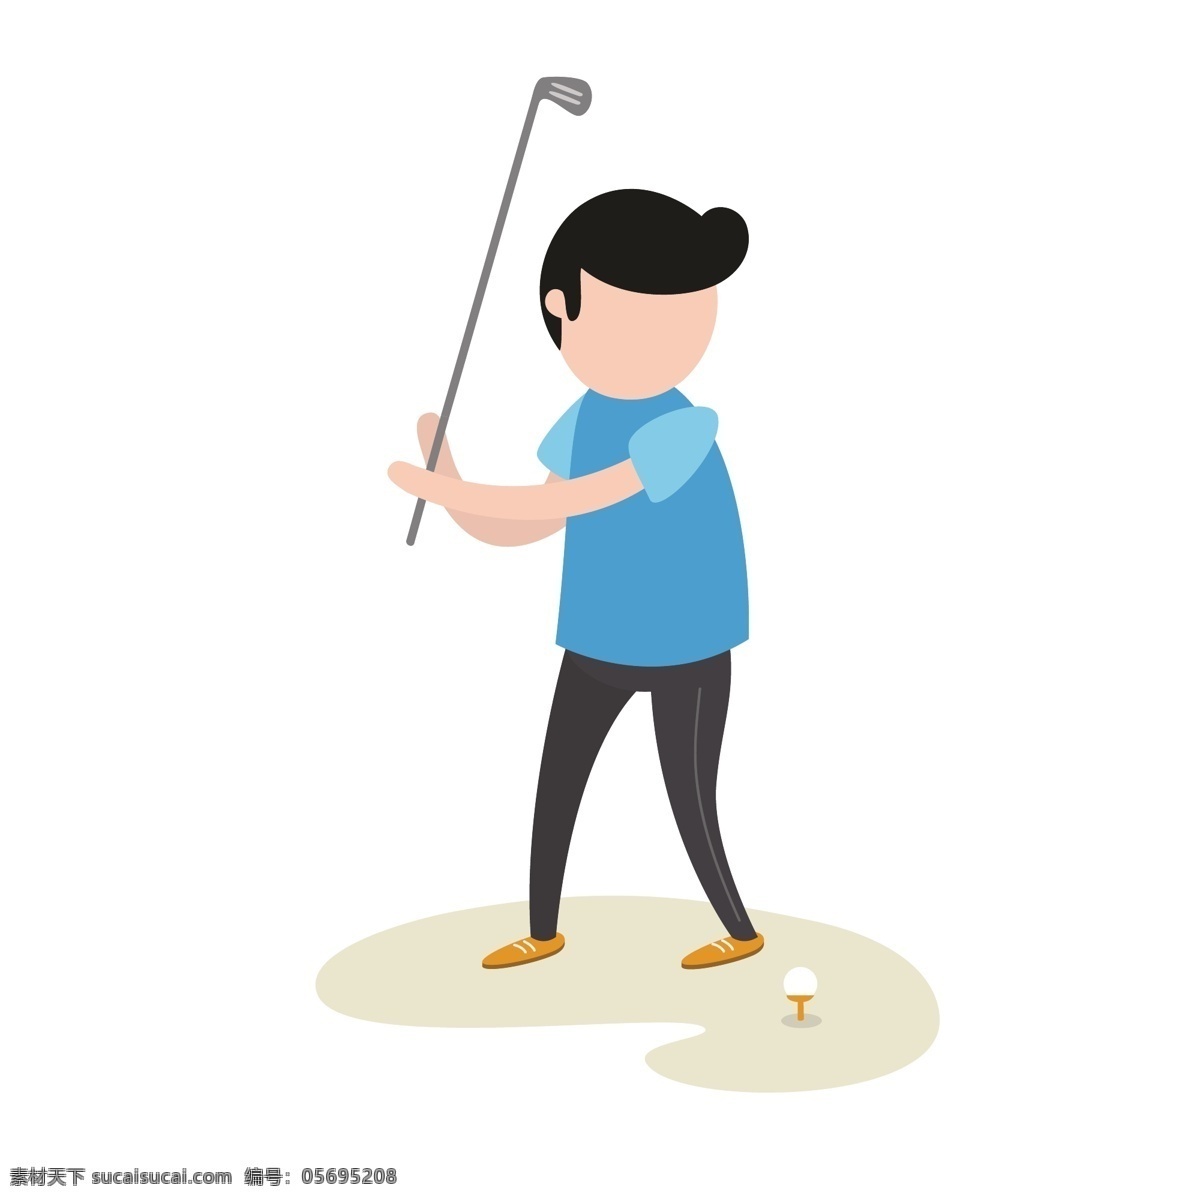 可爱 打球 人 矢量 打高尔夫球 高尔夫球 打球的人 可爱的人 动作 打球姿势 姿势 打球的 蓝色衣服